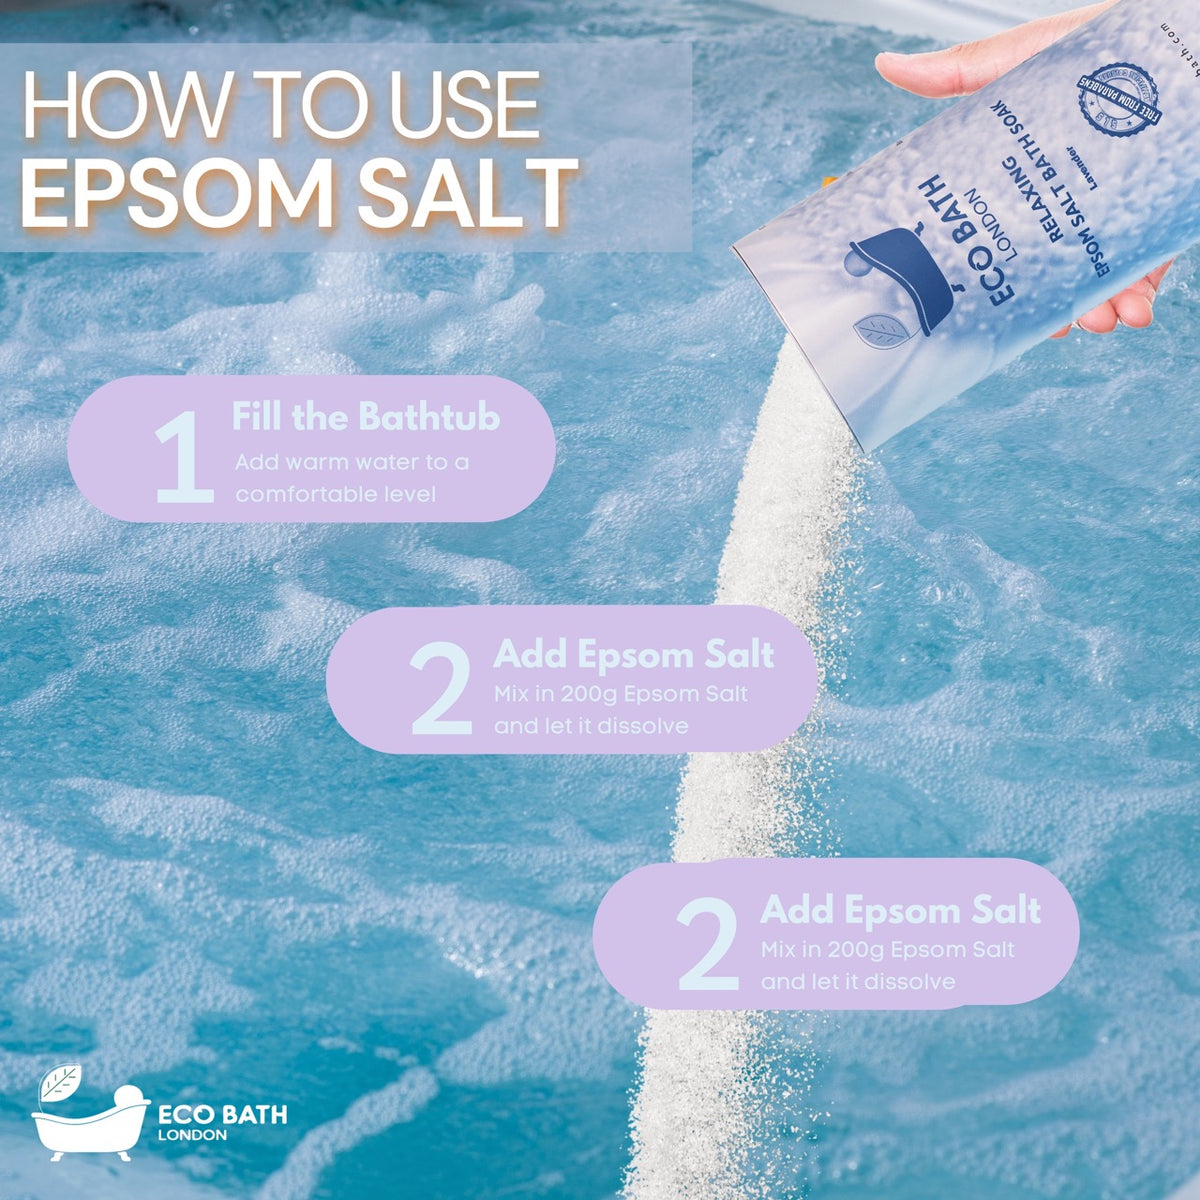 Bain relaxant au sel d'Epsom Eco Bath - Tube 